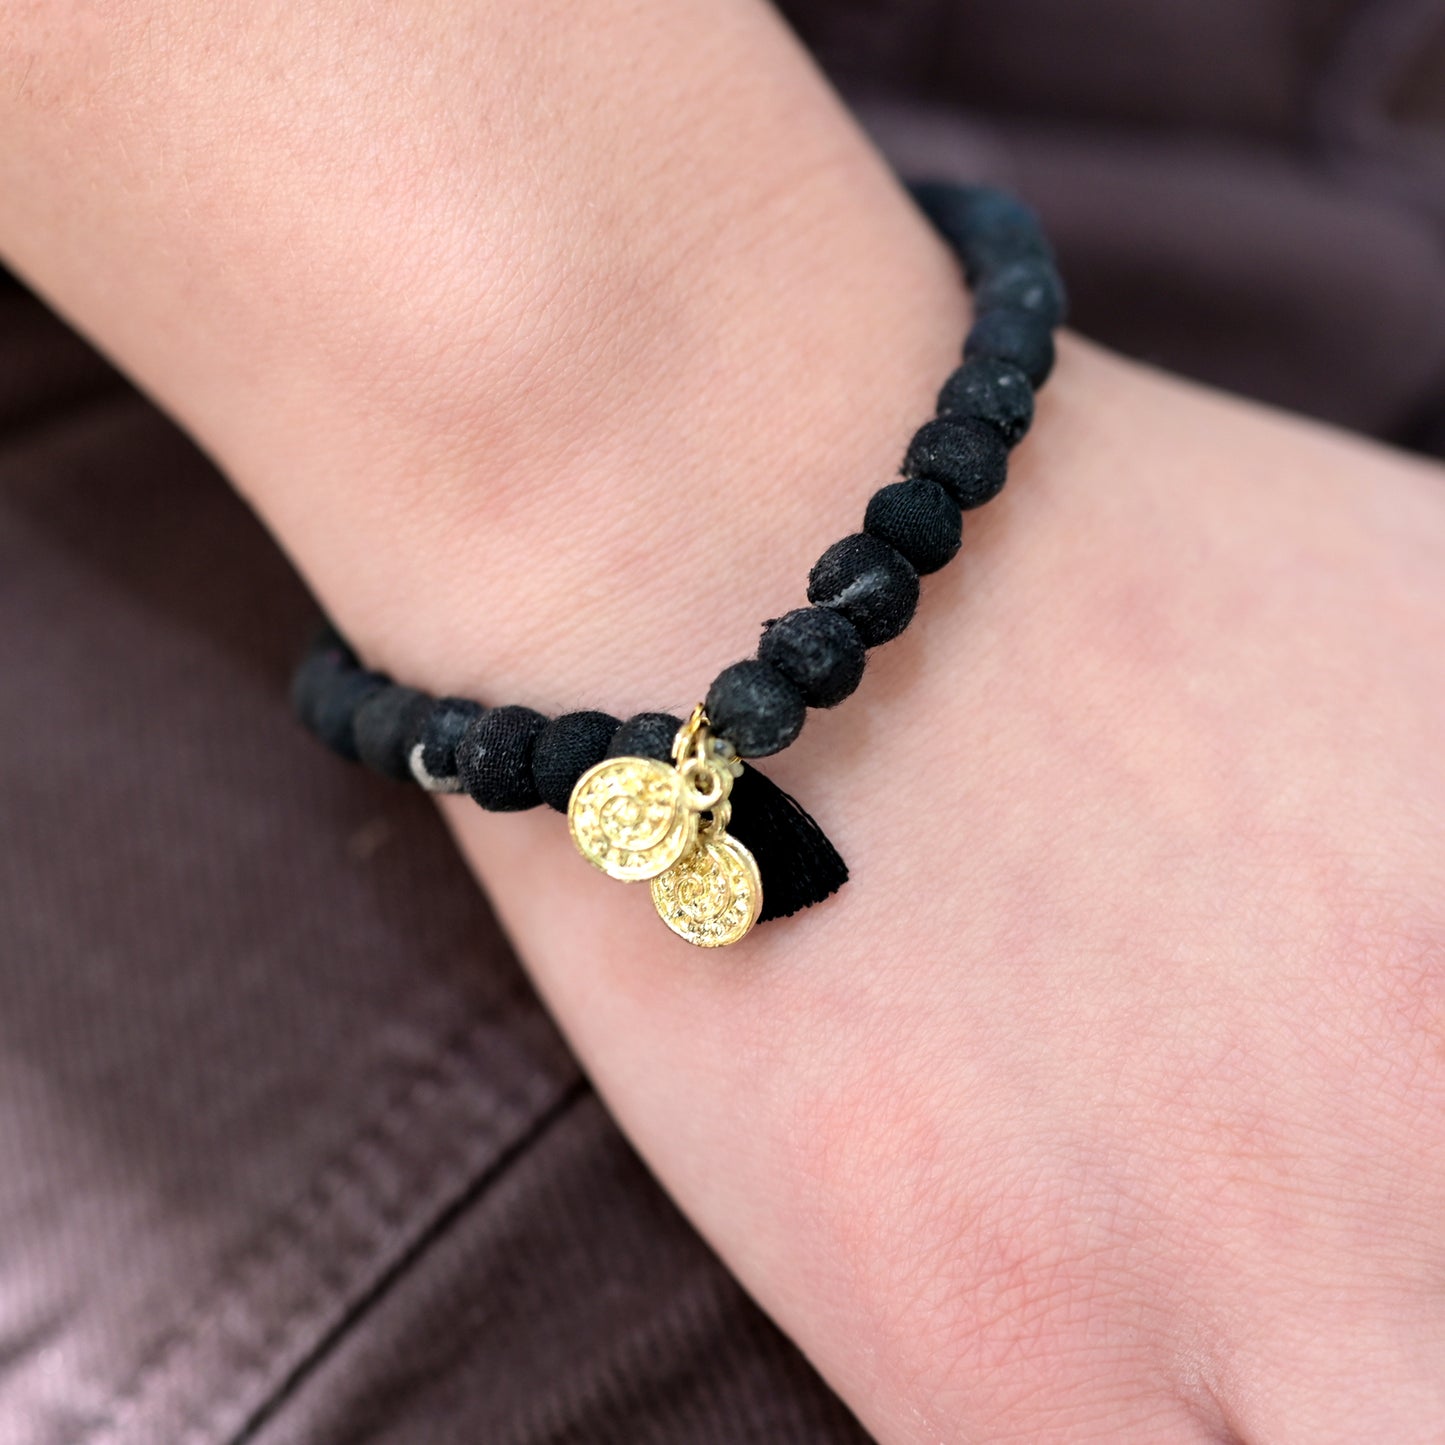 A black beaded bracelet adorns a wrist.